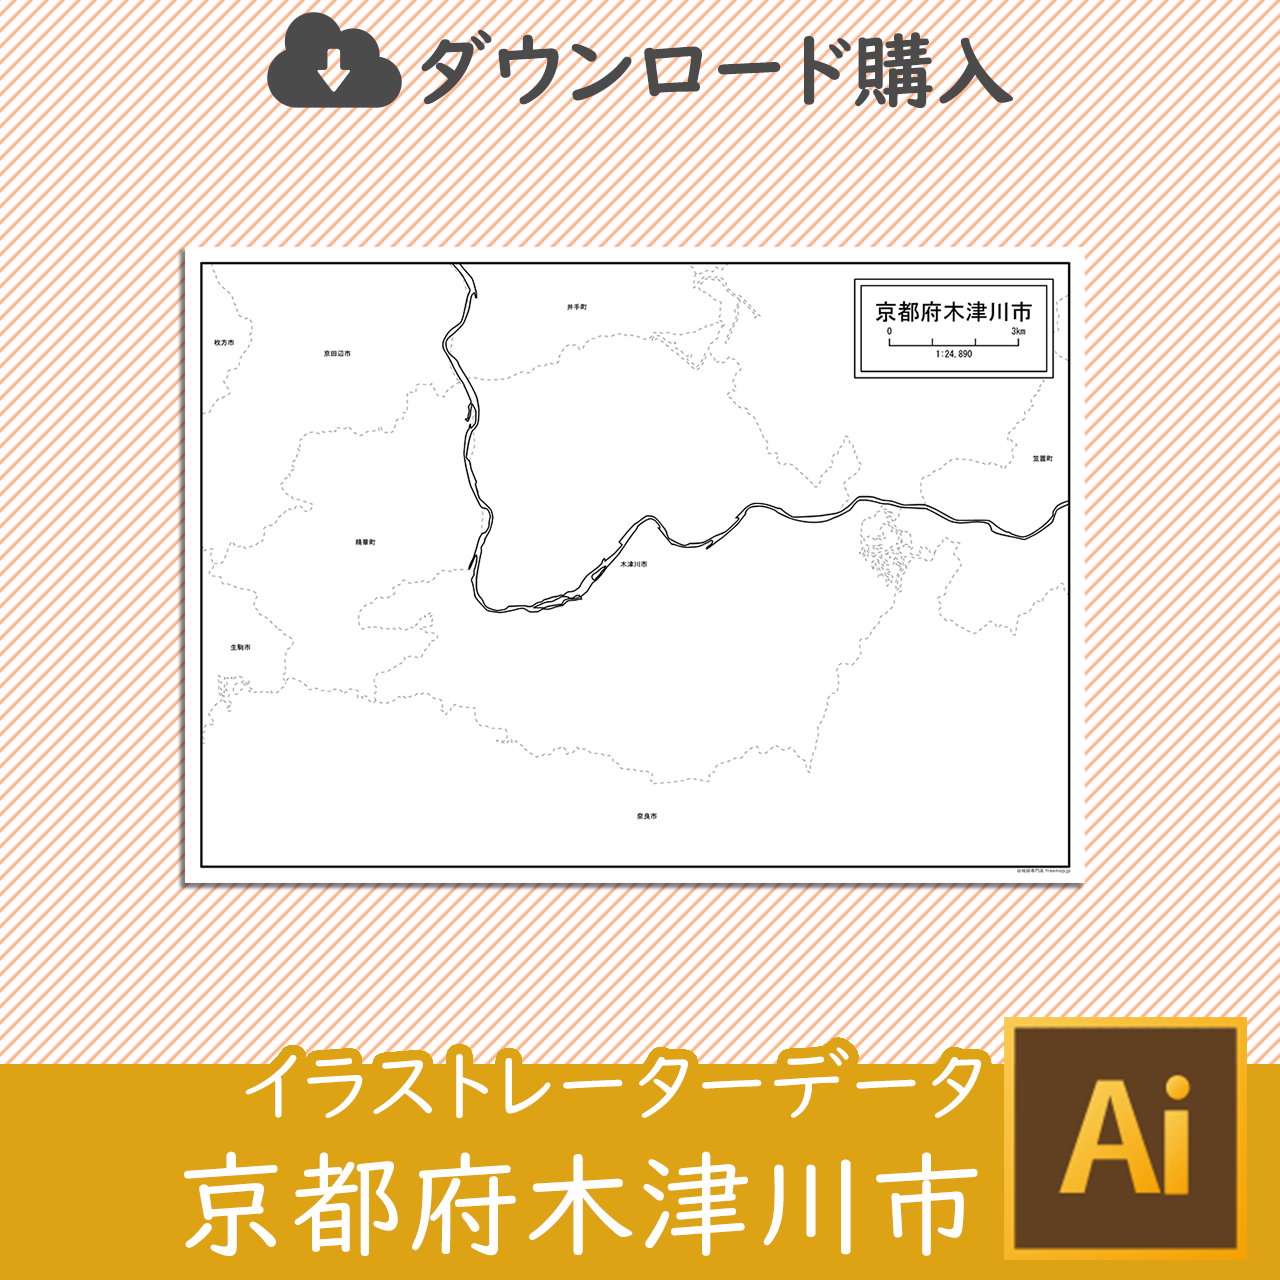 木津川市のaiデータのサムネイル画像